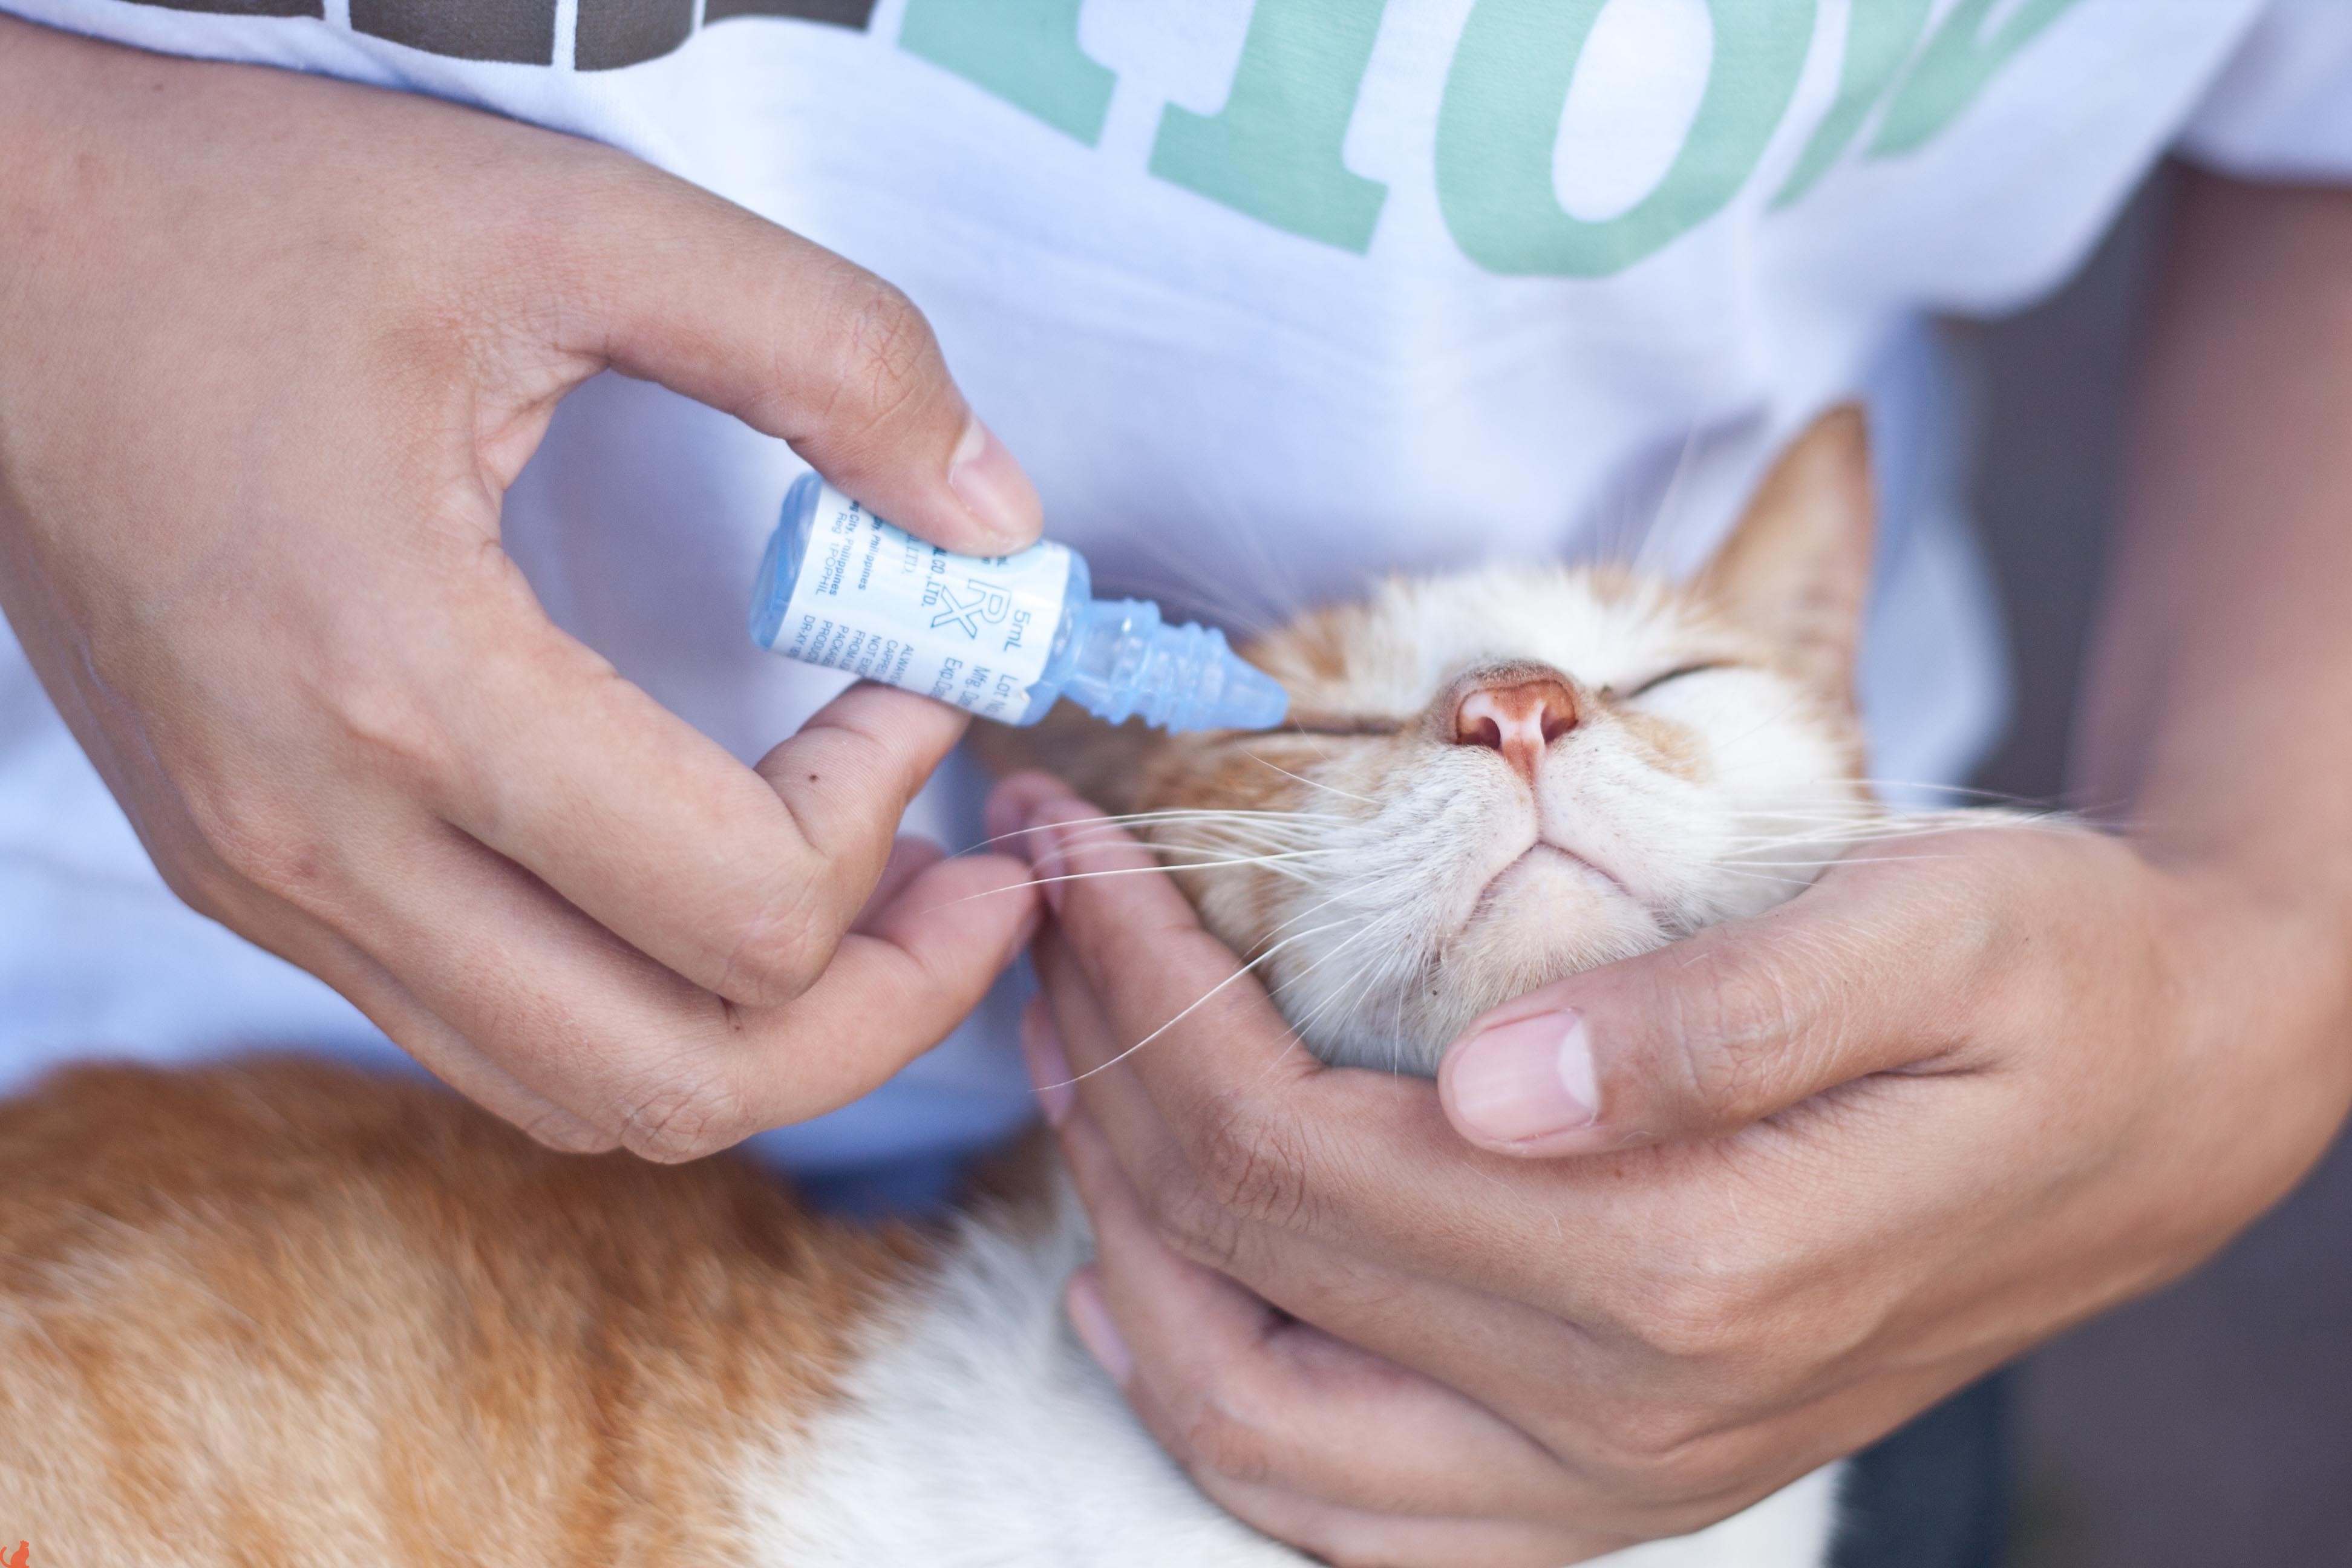 Цистит у кота: как лечить патологию